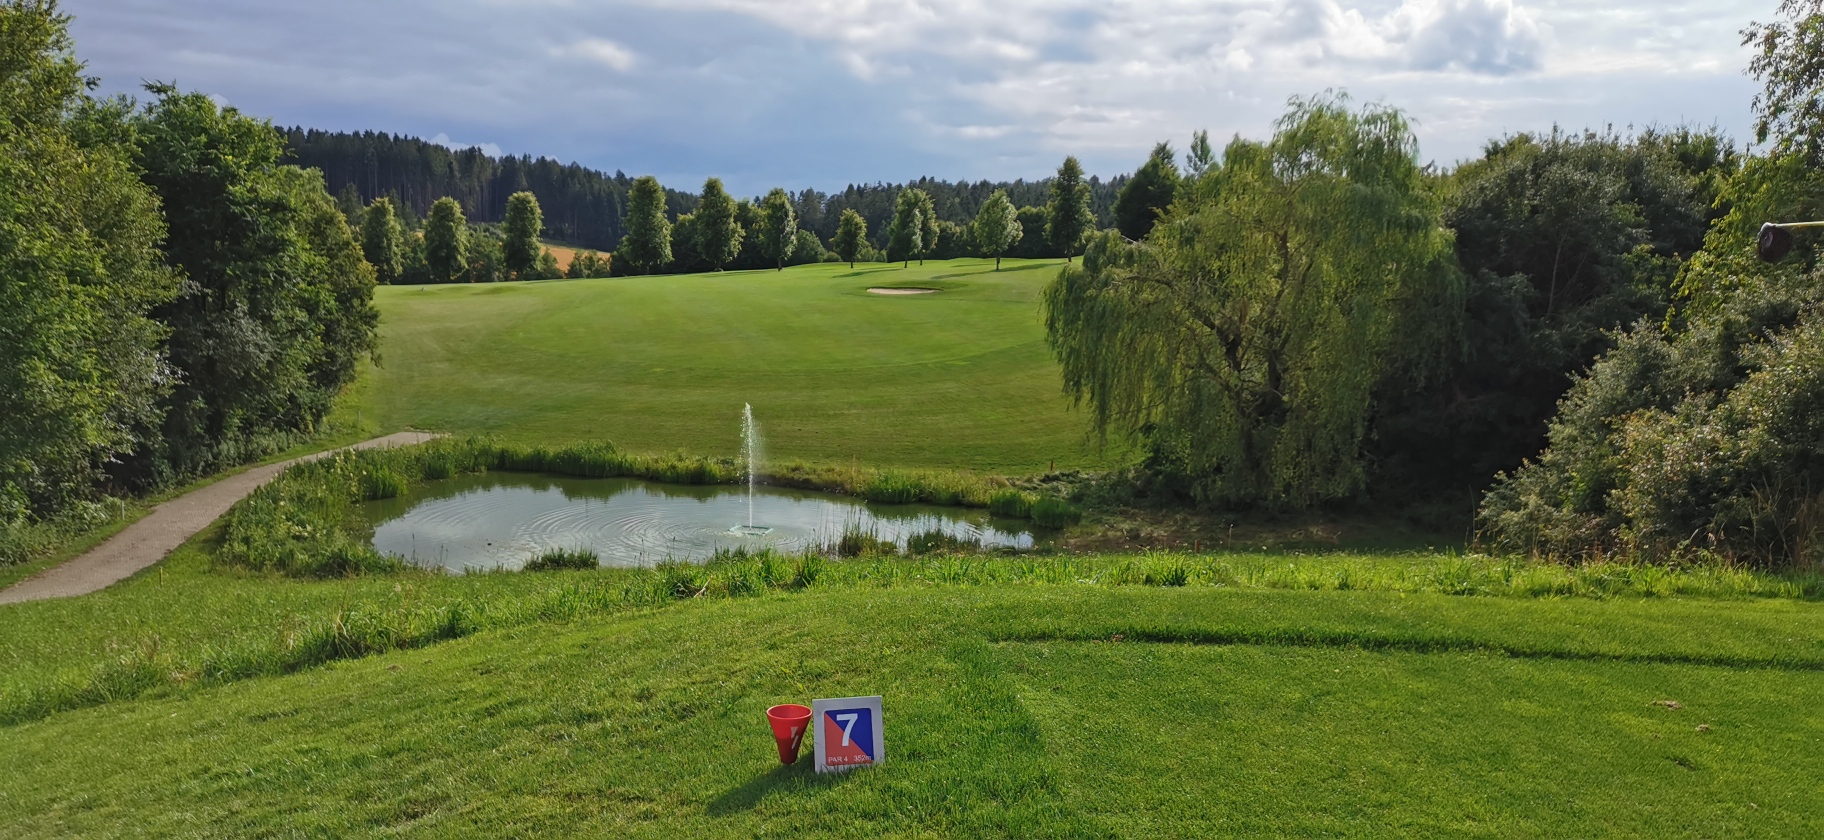 Golfclub Schloßberg im Doppeleinsatz